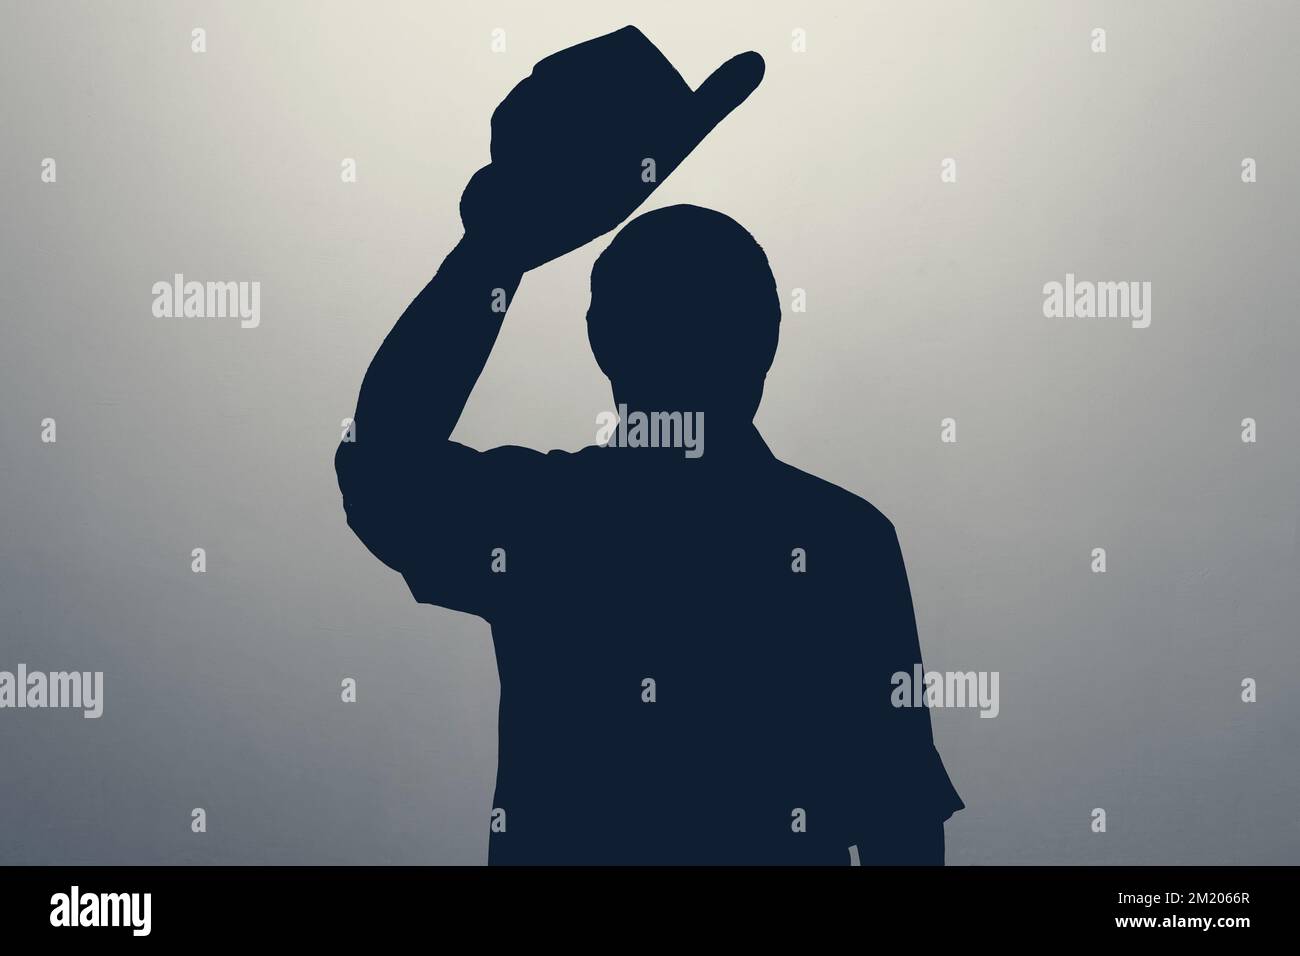 Silhouette eines Mannes, der mit dem Hut wedelt und Hallo oder Willkommen sagt. Anonym-Club-Konzept. Stockfoto